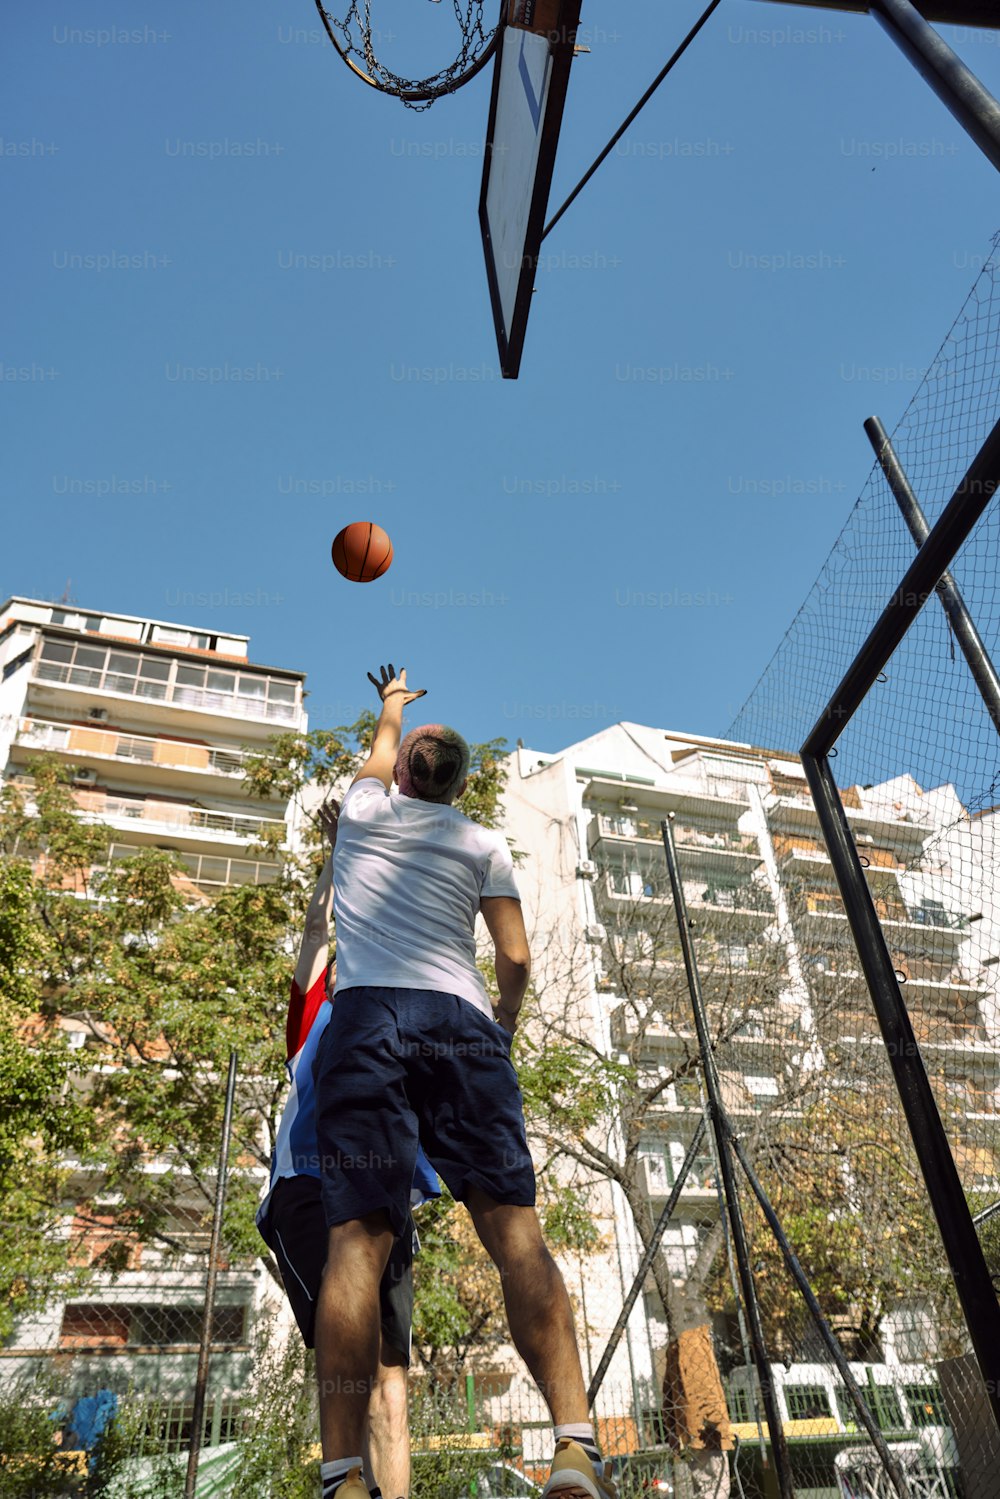 Un hombre está jugando baloncesto en una cancha